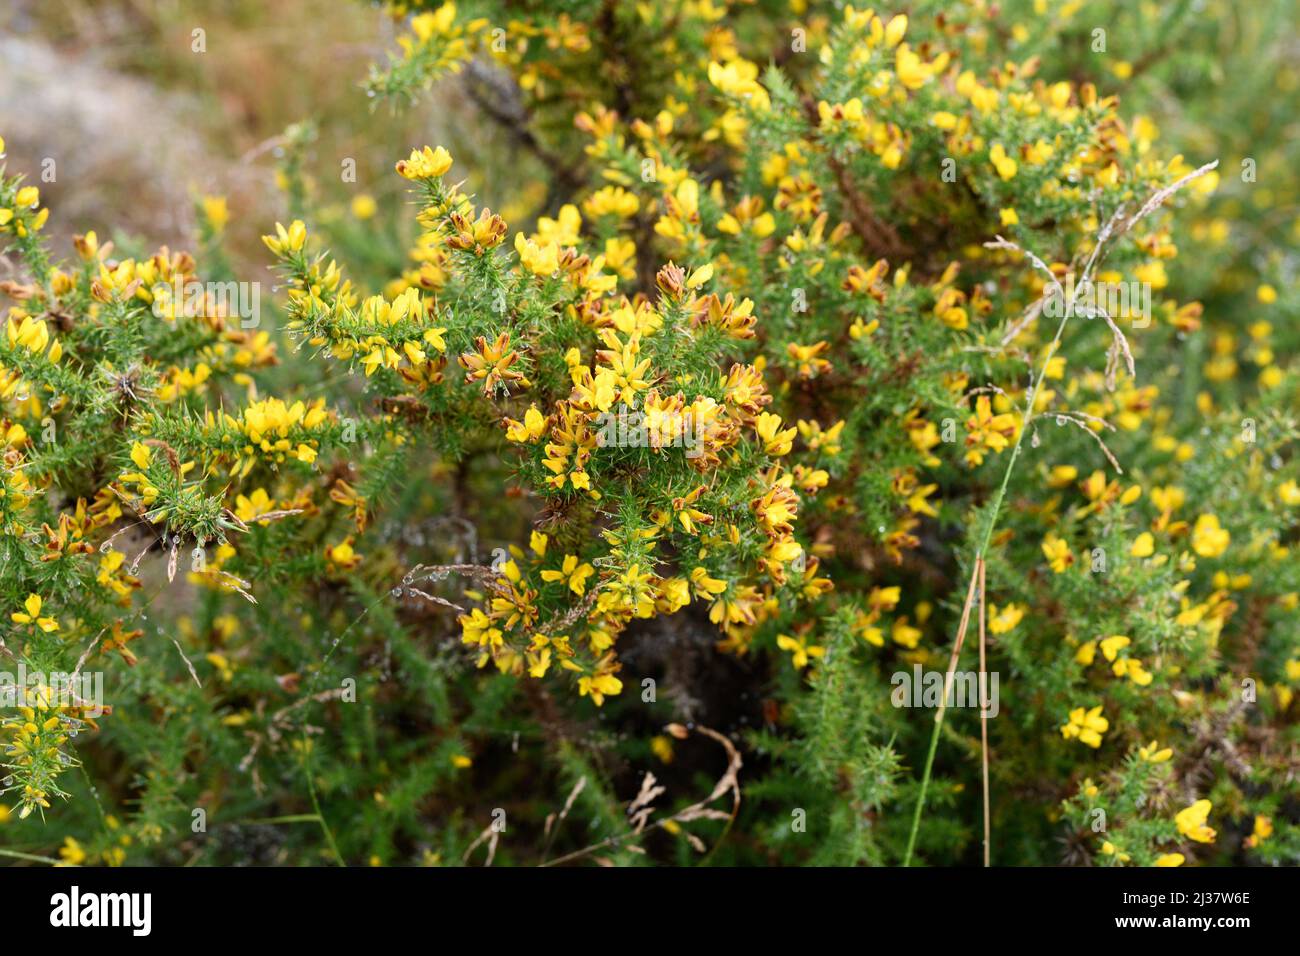 El GORSE (Ulex europaeus) es un arbusto espinoso nativo de Europa occidental (costas atlánticas). Esta foto fue tomada en Vilarinho Seco, Portugal. Foto de stock